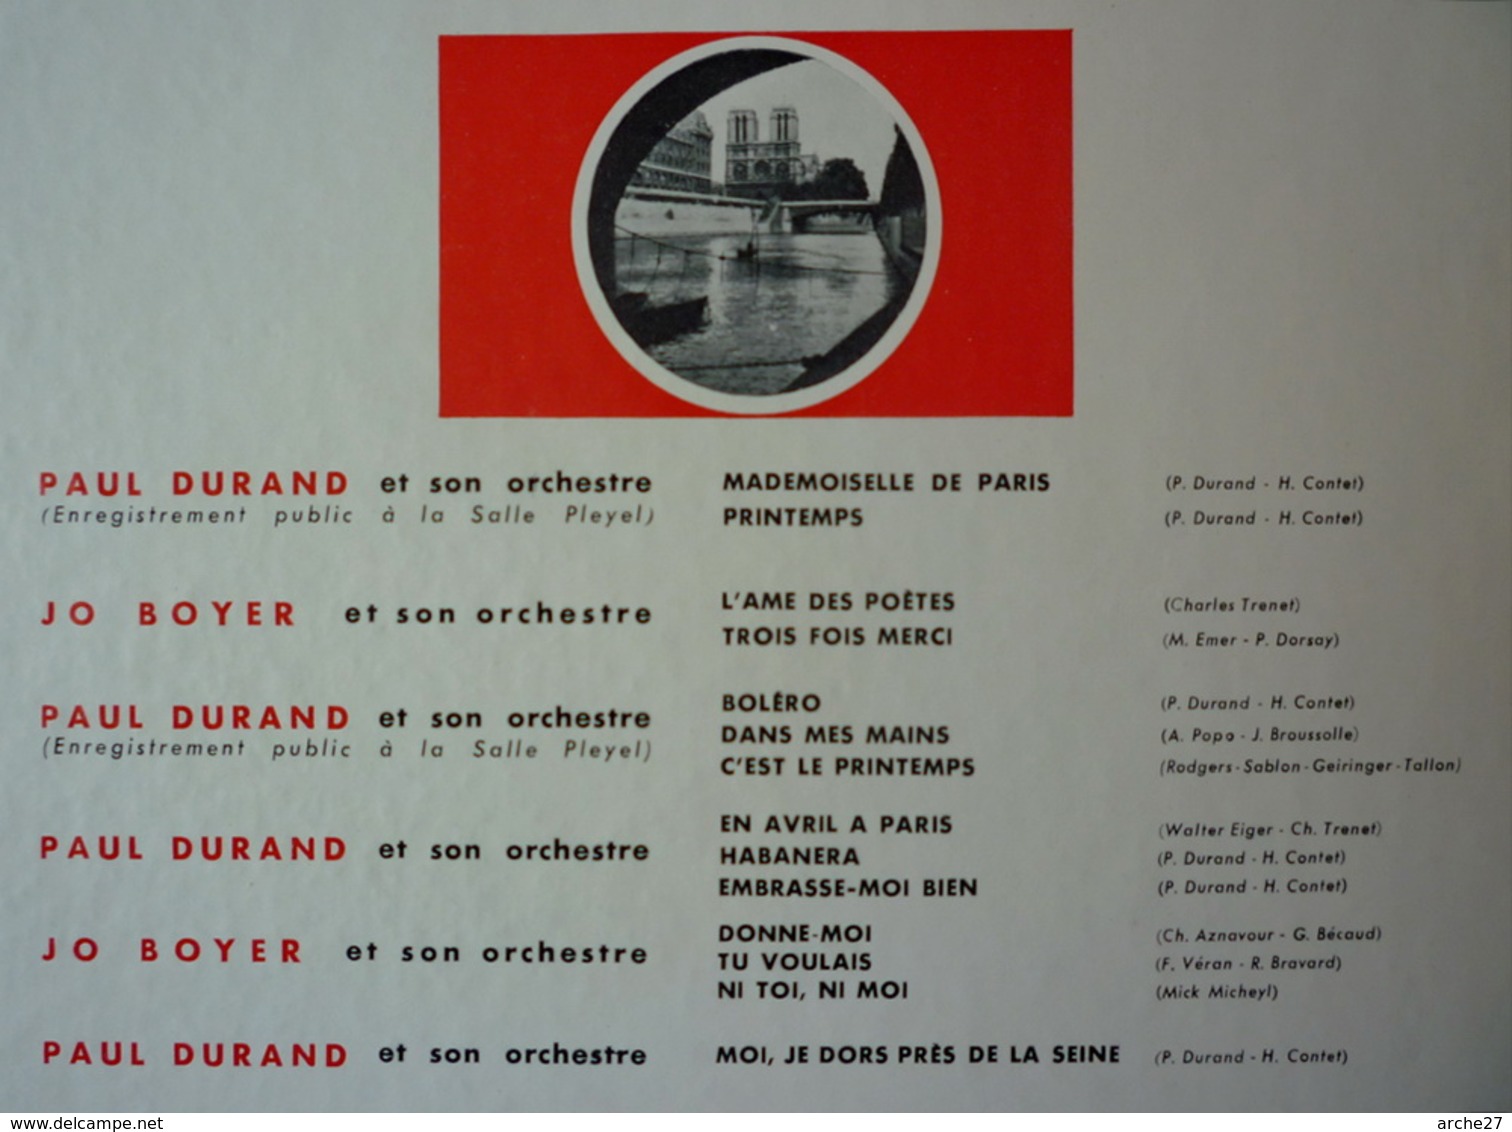 JACQUELINE FRANCOIS - LP - 33T - Disque Vinyle - Trésors De La Chanson - 77452 - Sonstige - Franz. Chansons